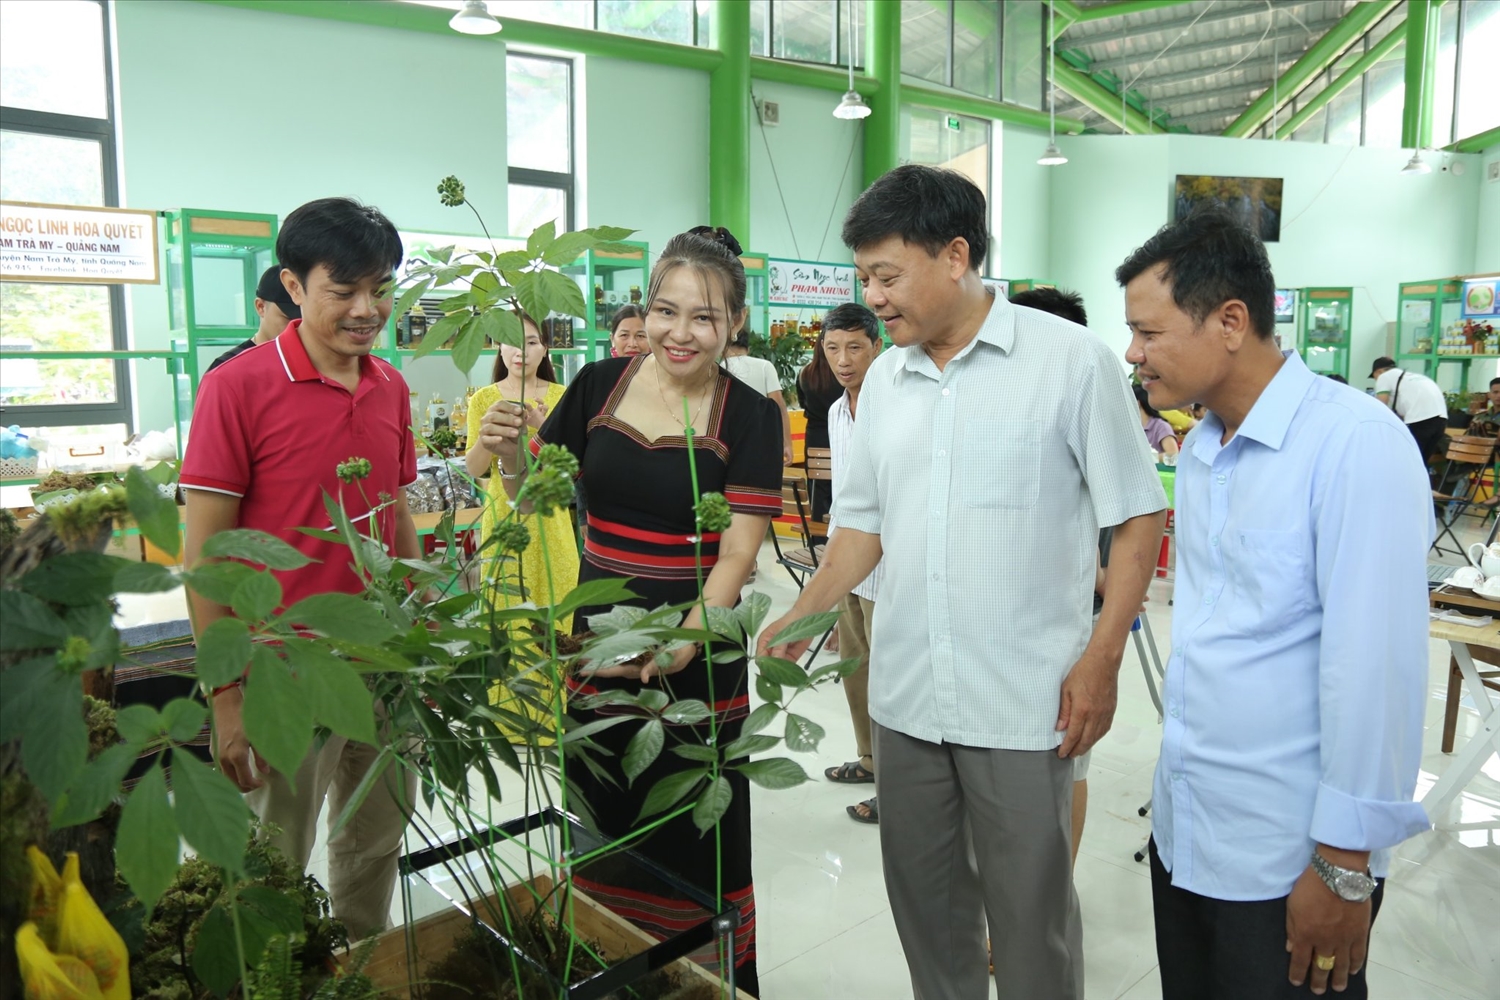 Đề án phát triển Sâm Ngọc Linh được kỳ vọng sẽ mang lại thu nhập cao cho người dân vùng đồng bào DTTS và miền núi tỉnh Quảng Nam